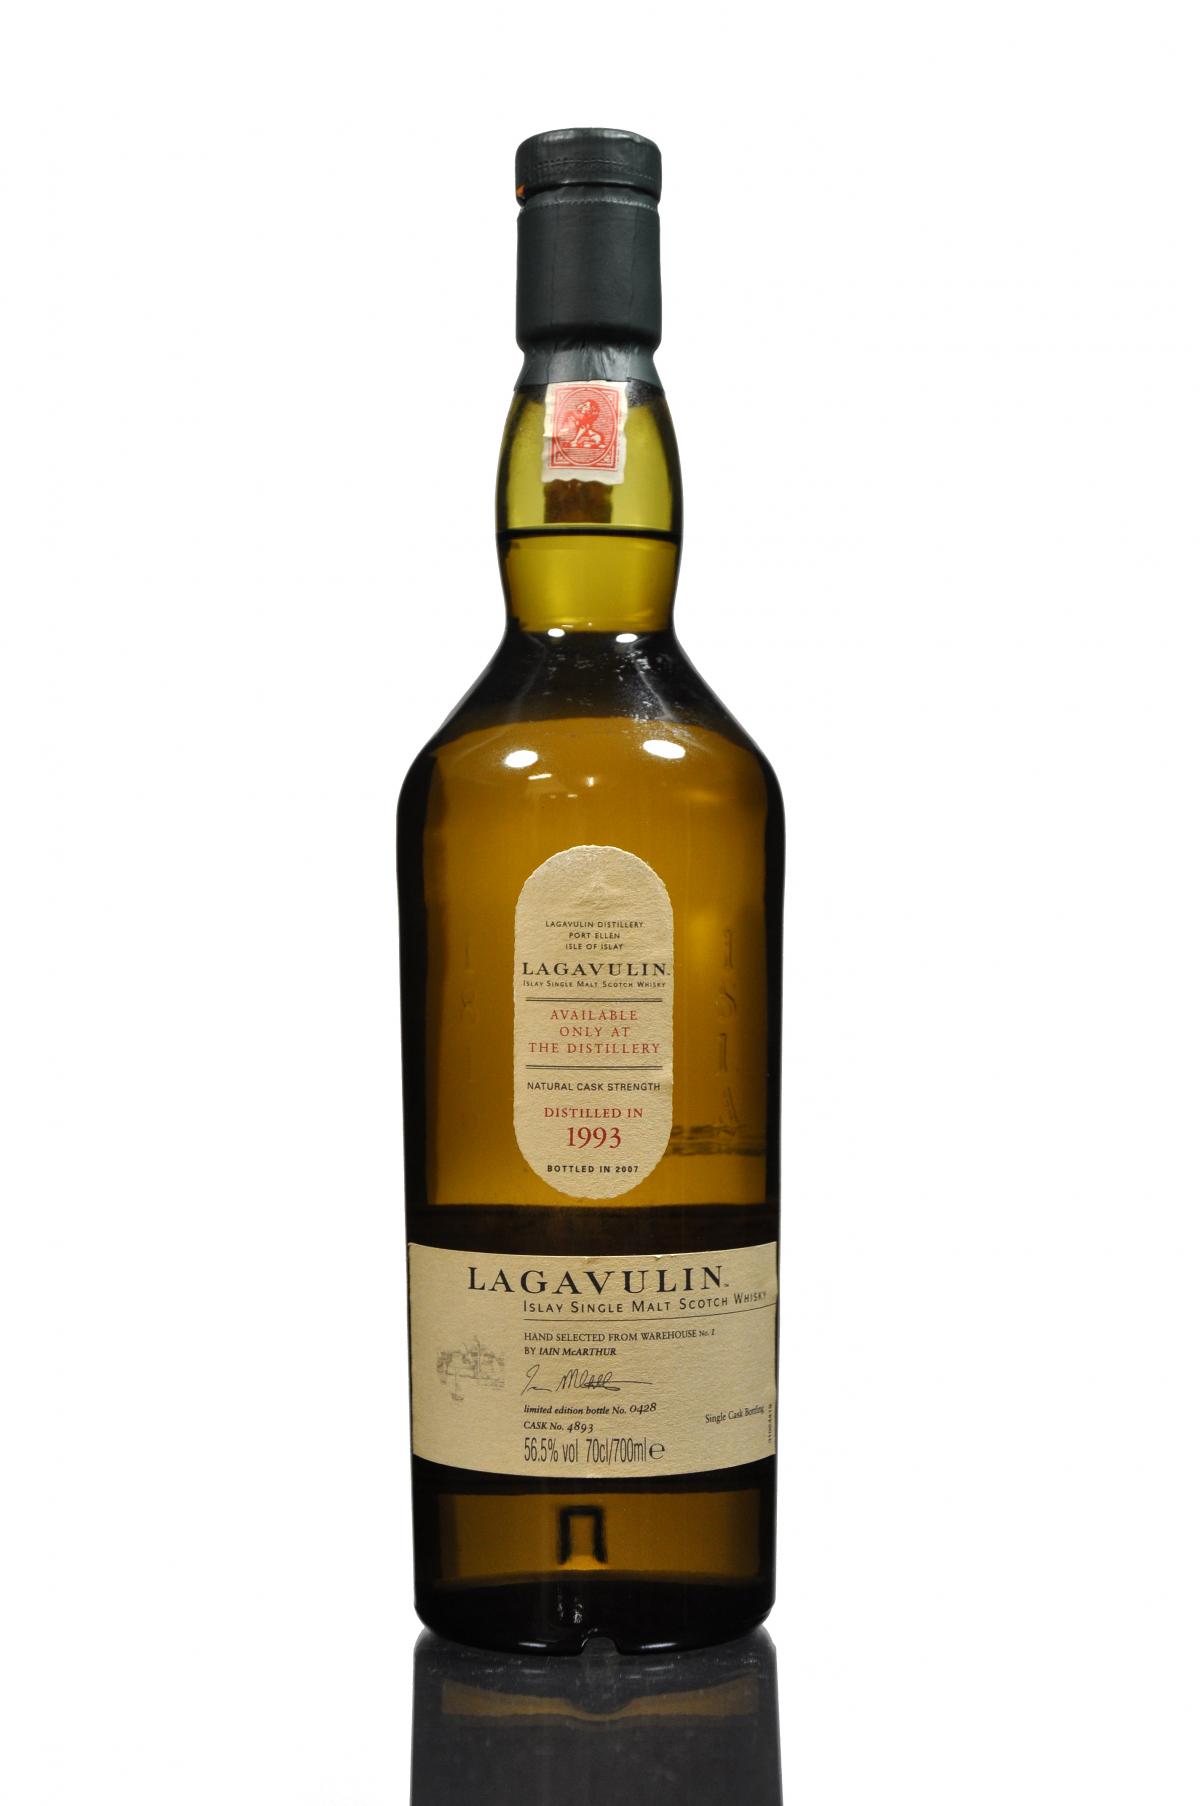 Lagavulin 1993 - Distillery Only 2007